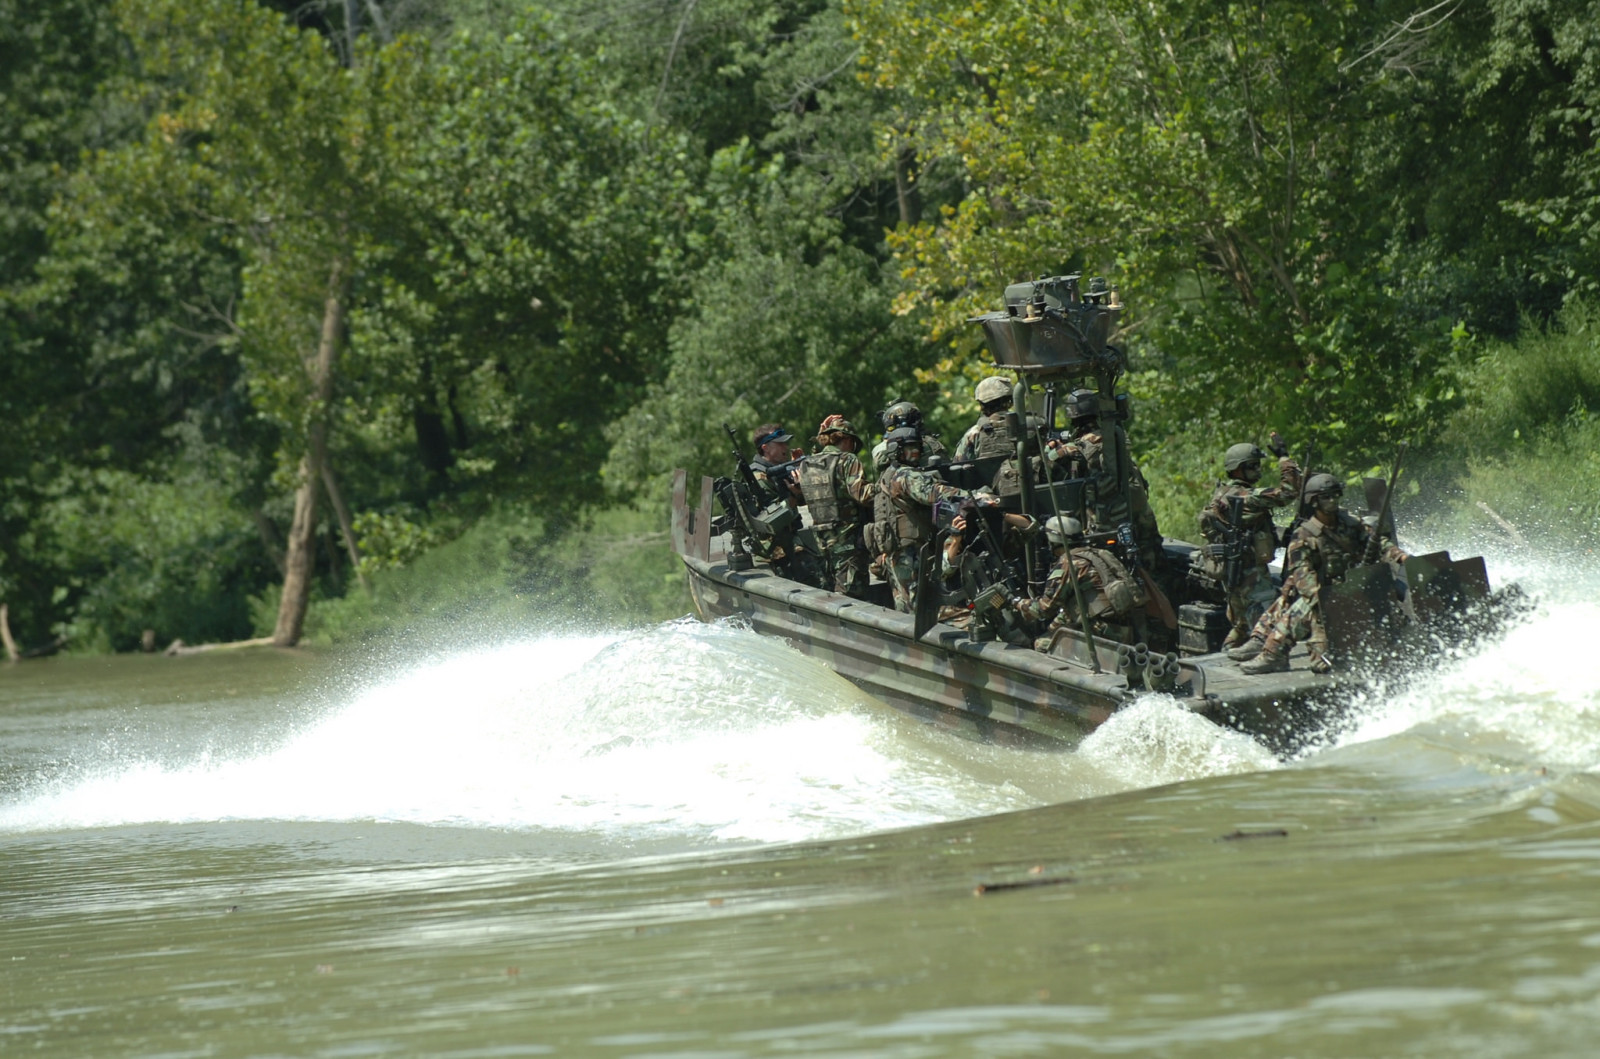 ธรรมชาติ, แม่น้ำ, คลื่น, ทหาร, อุปกรณ์, เรือต่อสู้, SBT-22